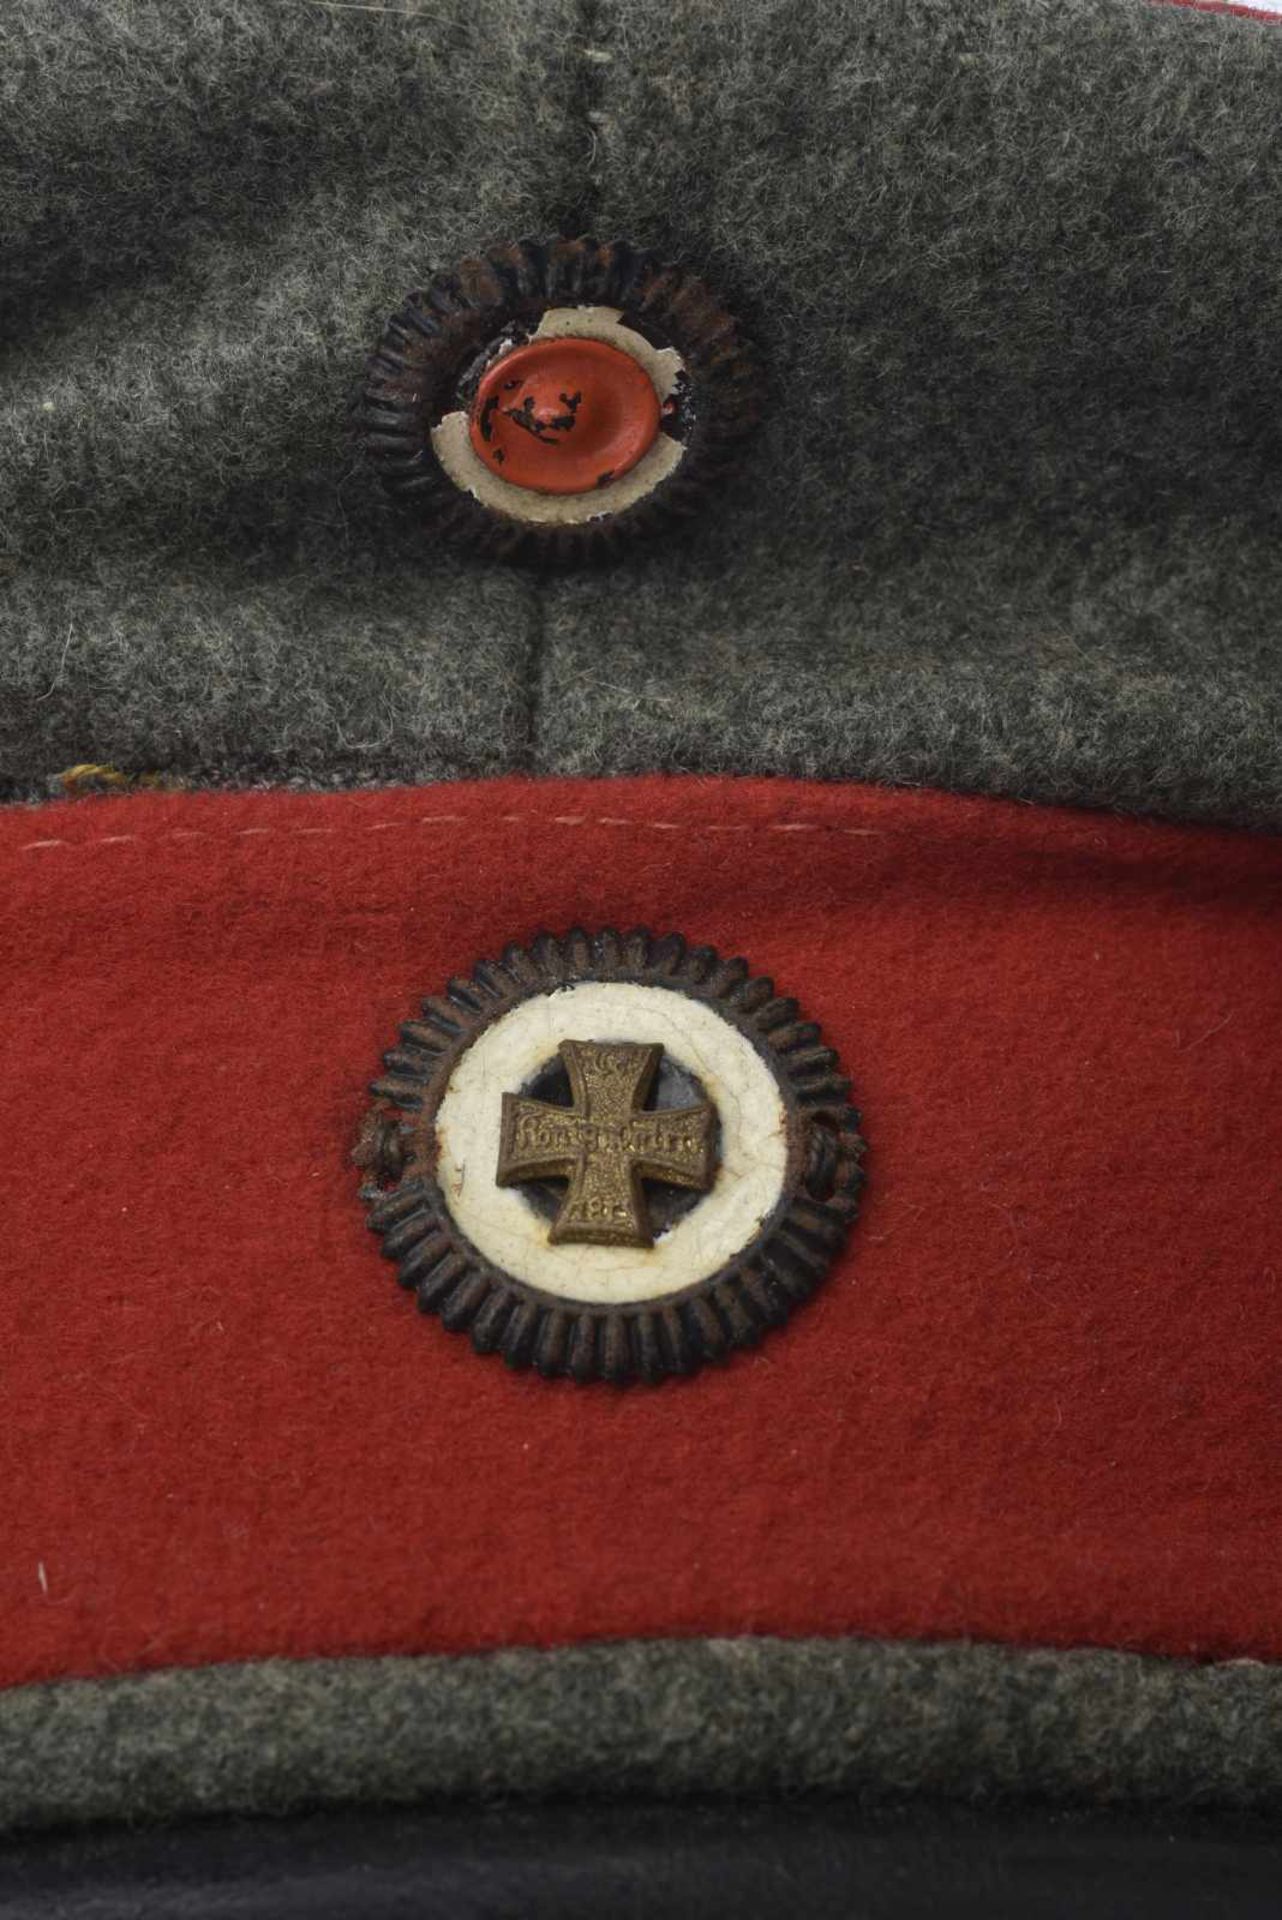 Casquette Schirmmütze de réserviste felgrau bandeau rouge, cocarde à la croix de fer. Etat II - Image 2 of 4